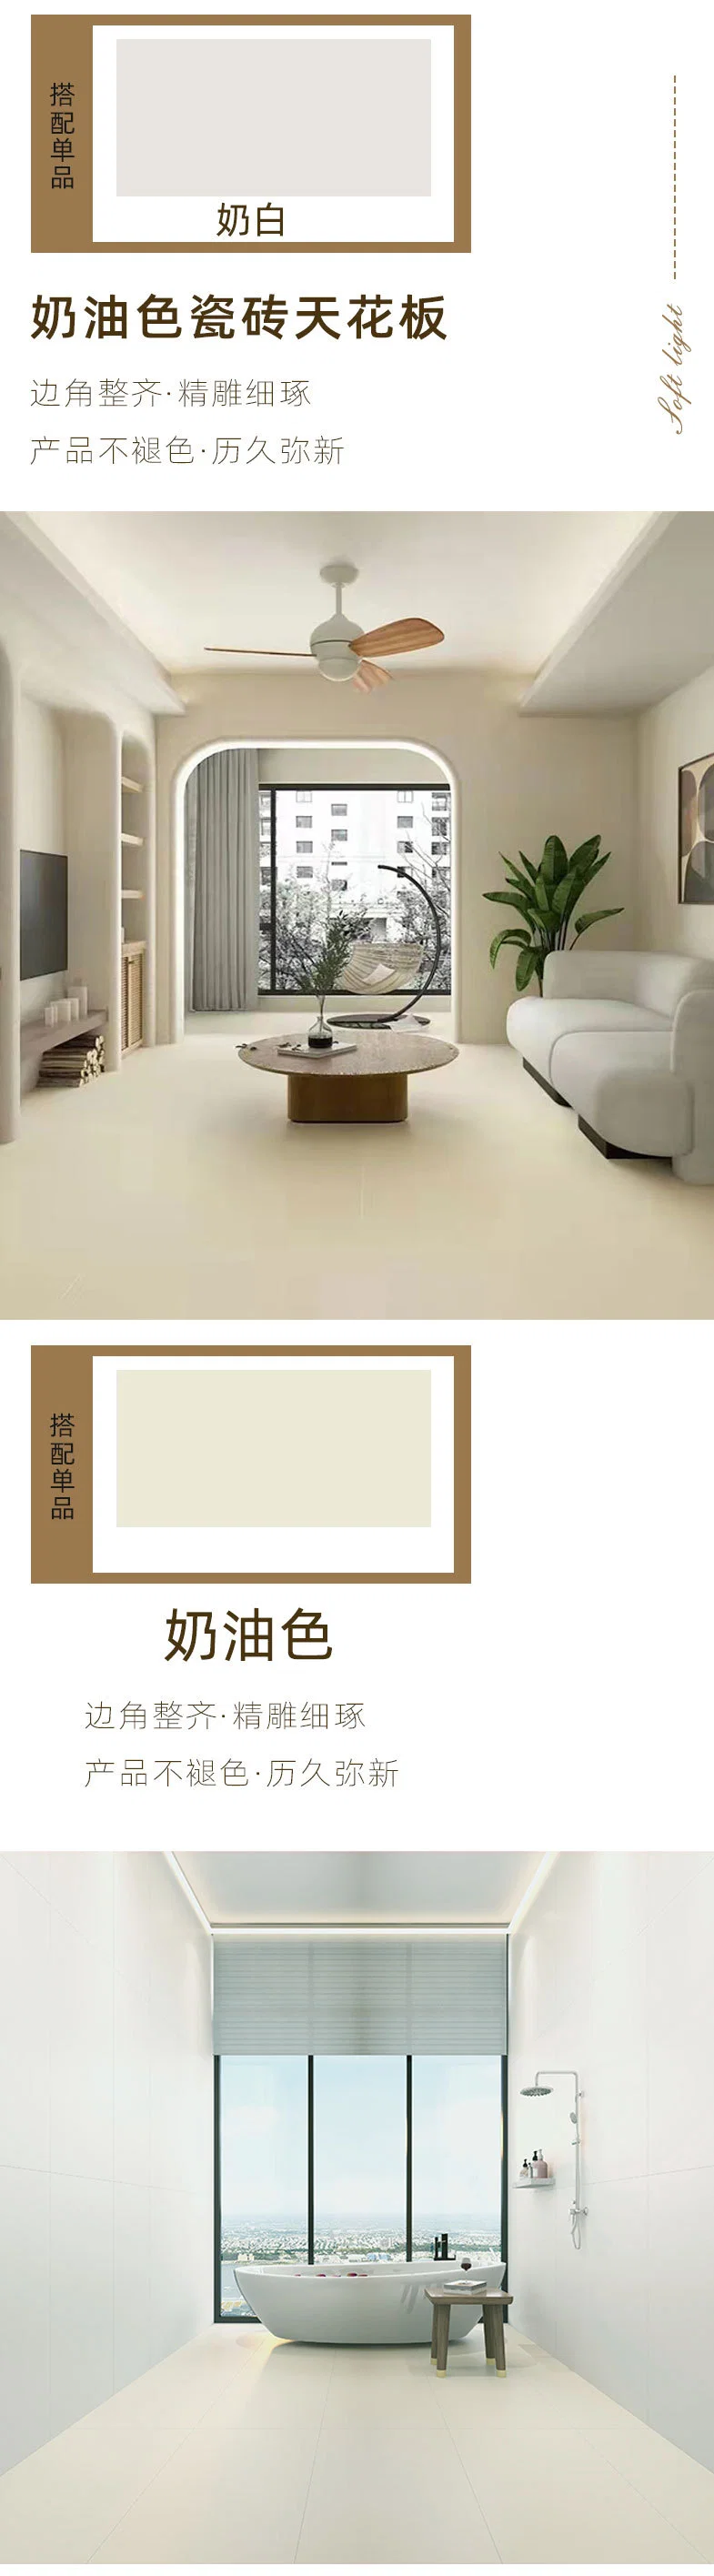 Shaneok Modern 300*600/600*1200 Polished Porcelain Glazed Ceramic Wall Tile for Bathroom